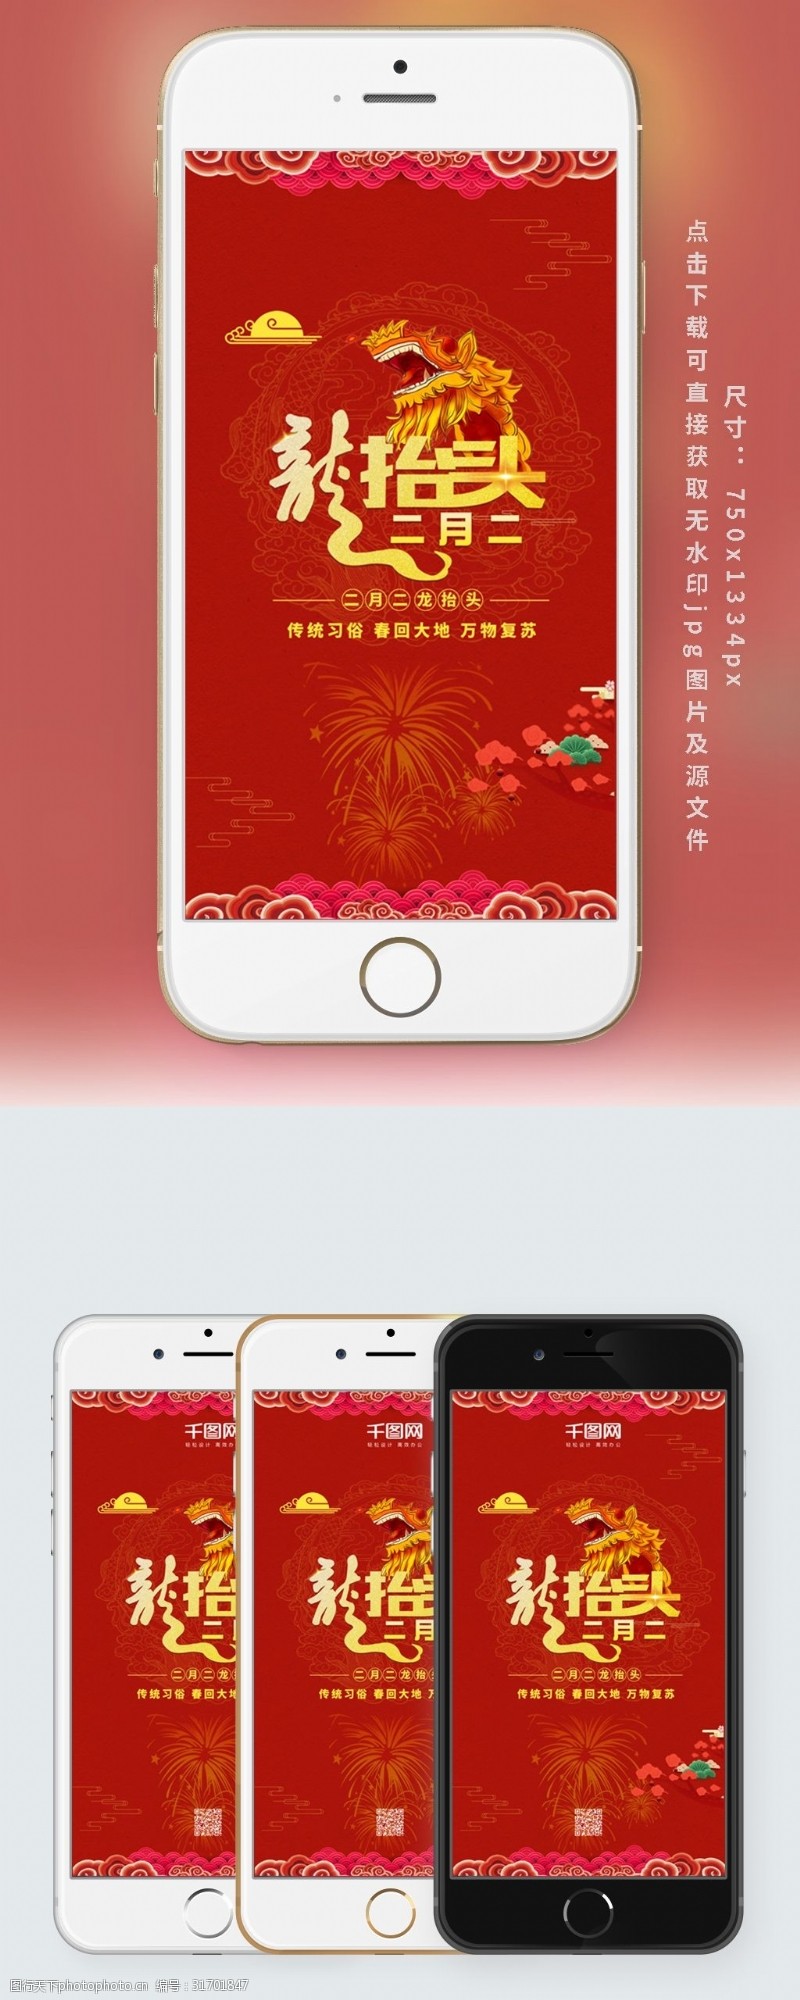 红色大气龙抬头中国红传统习俗春回大地万物复苏节日海报手机用图